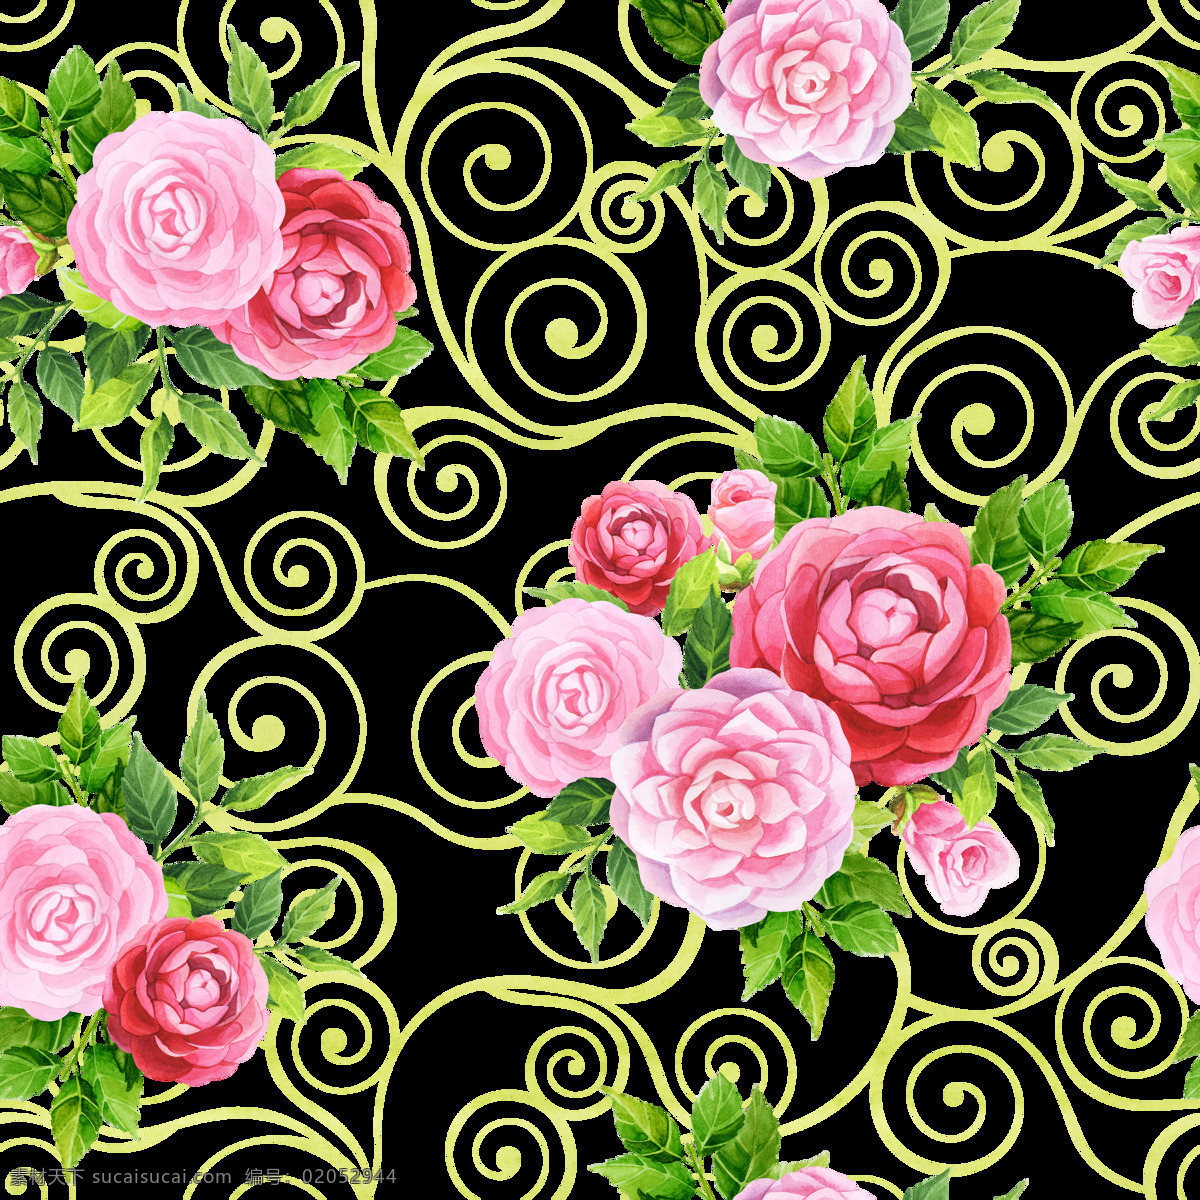 婚礼 现场 浪漫 花卉 背景 背景素材 粉红色 绿色 牡丹 平铺背景 水彩 叶子